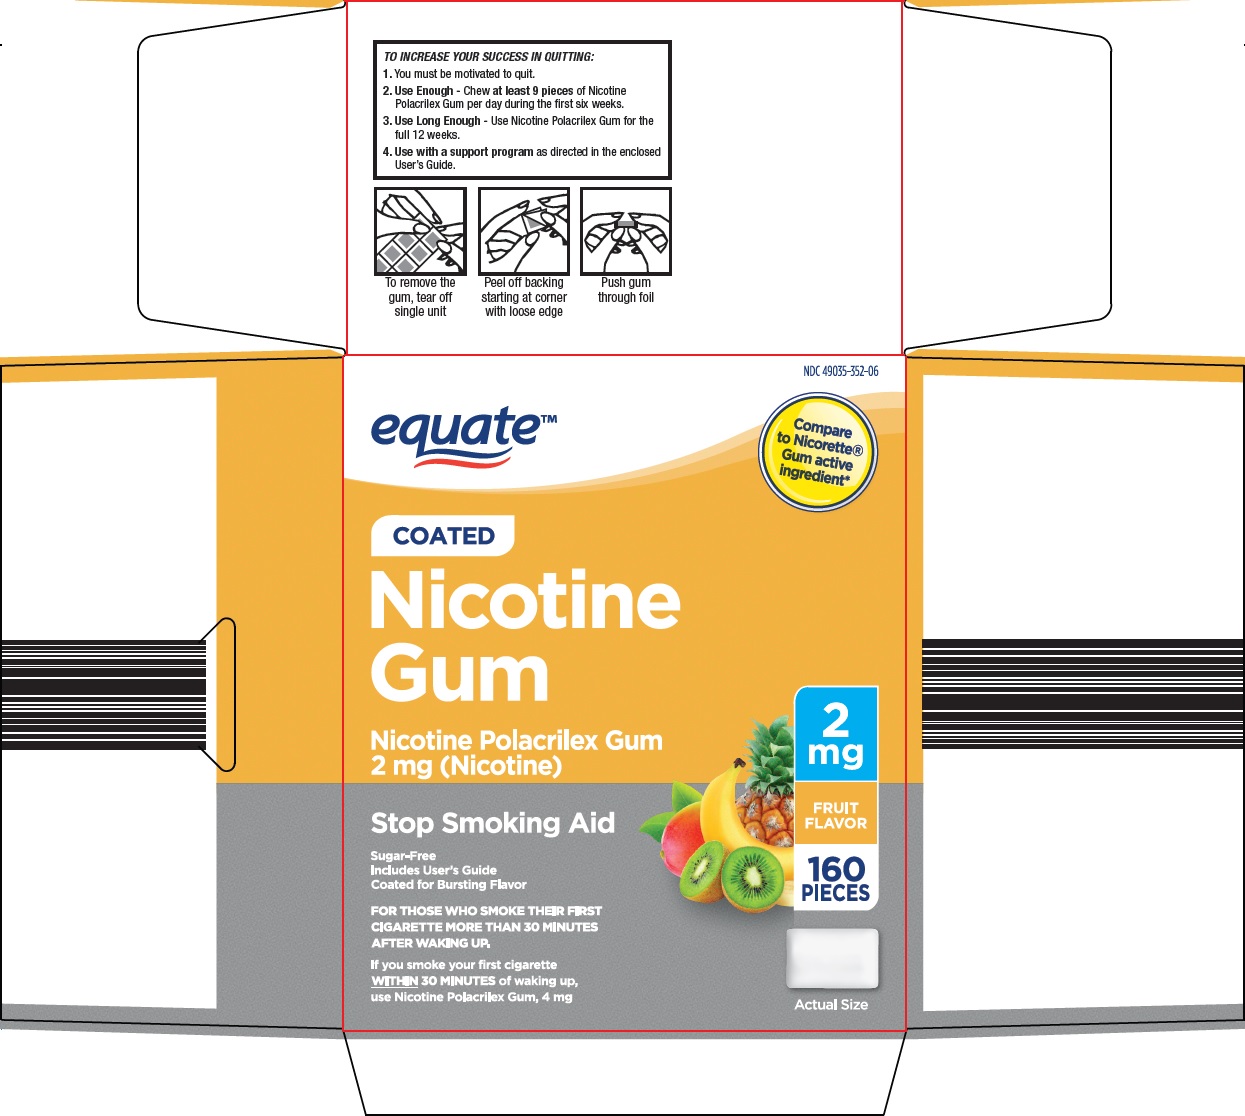 352-2e-nicotine-gum-1